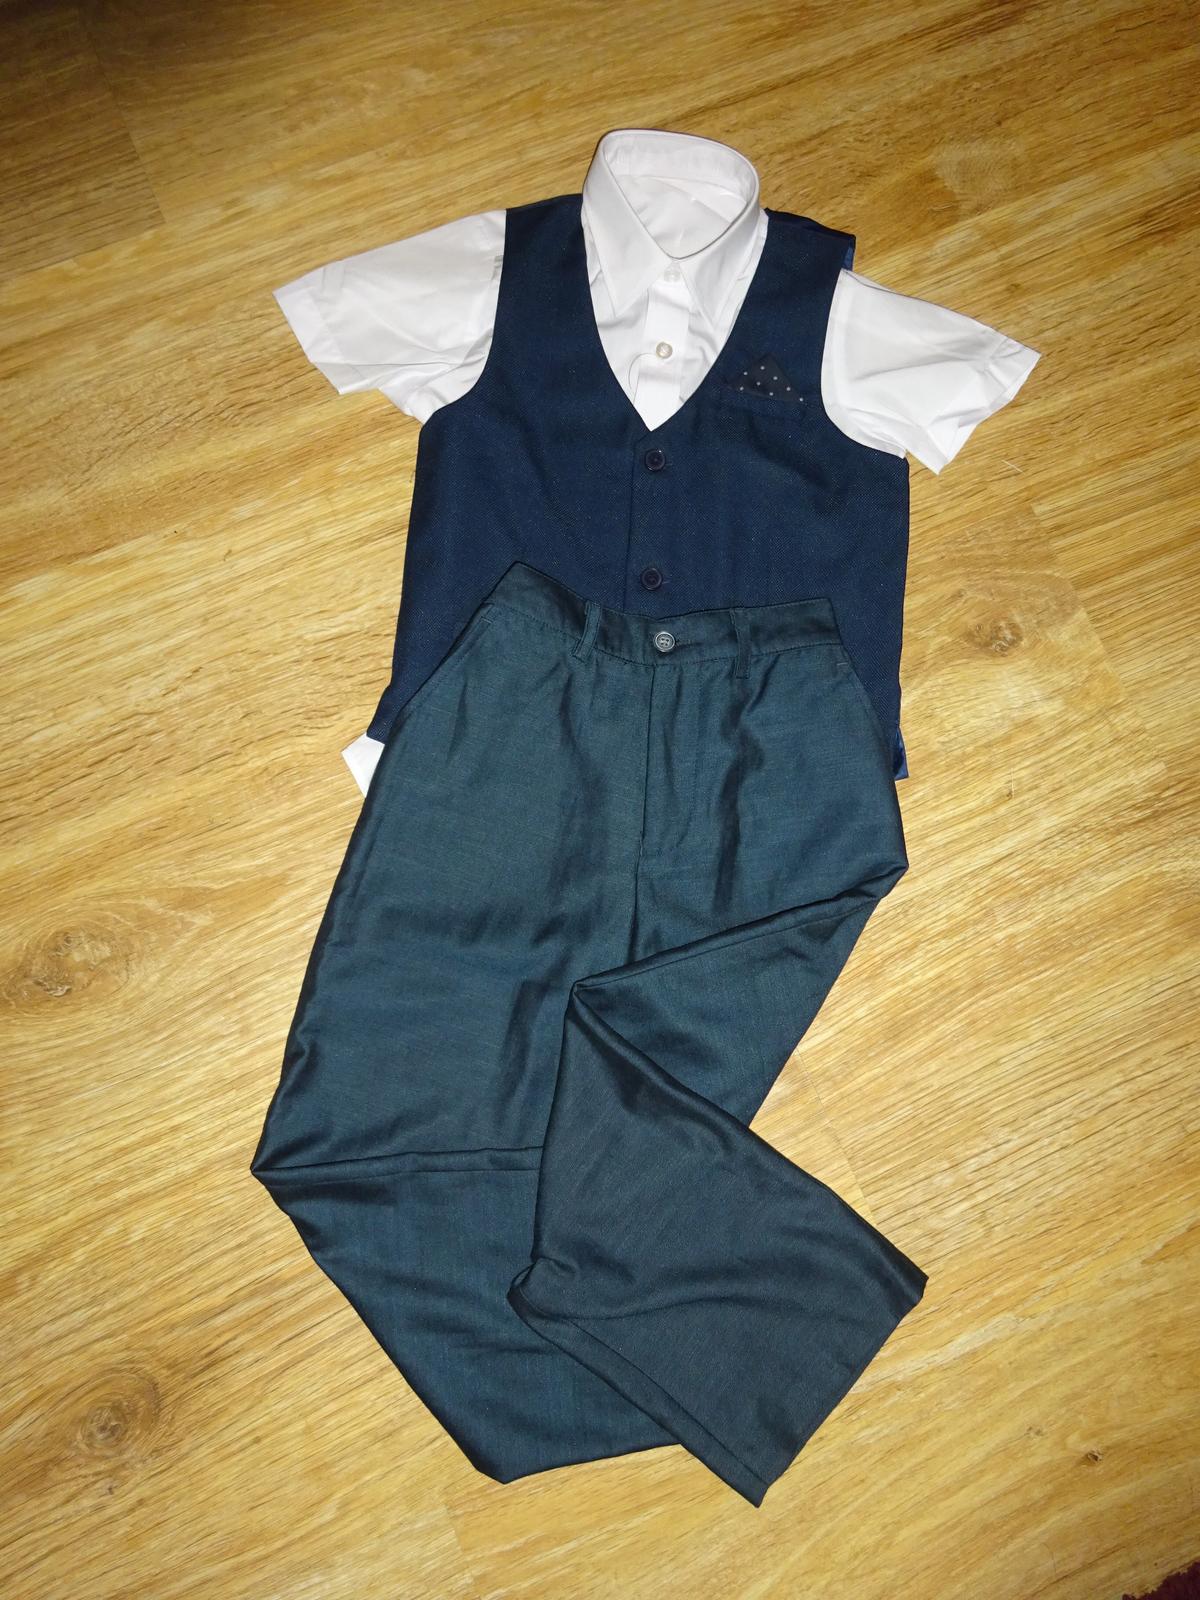 Tmavě modré kalhoty, vesta a košile vel. 110 - 116 - Obrázek č. 1